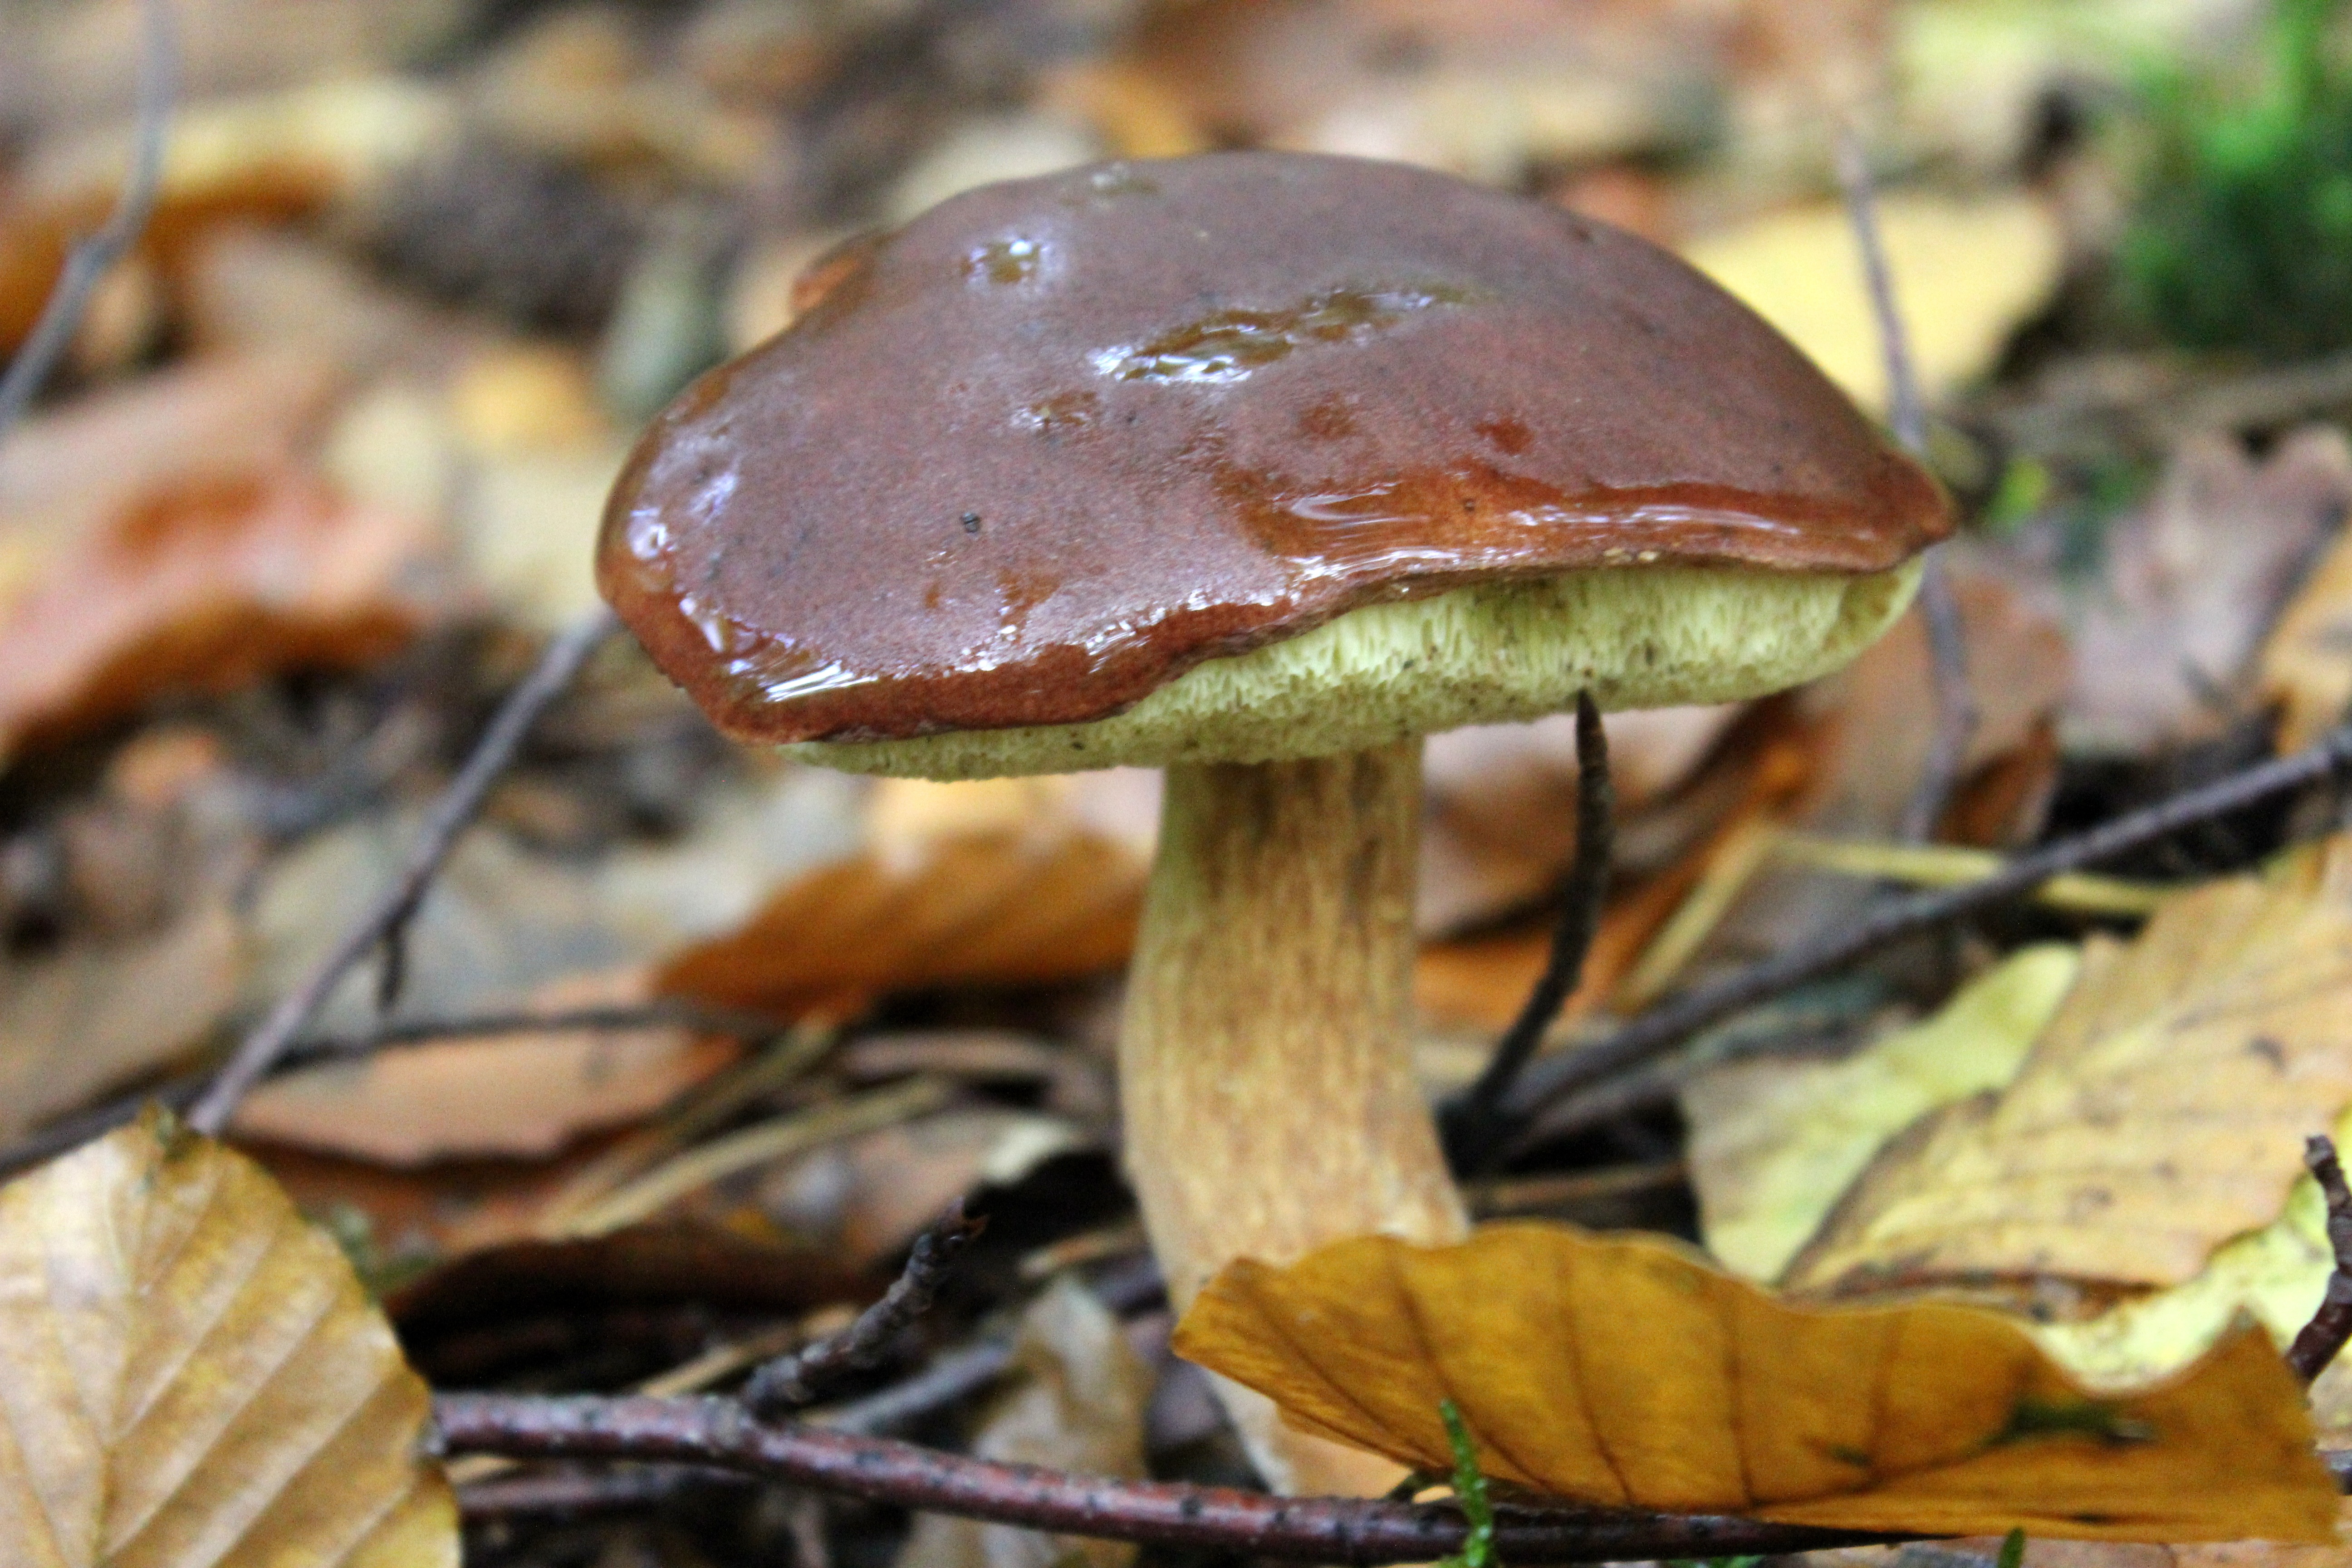 Каштановый гриб (gyroporus castaneus), заячий, гиропорус каштановый или каштановик: описание, фото, рецепты приготовления в домашних условиях